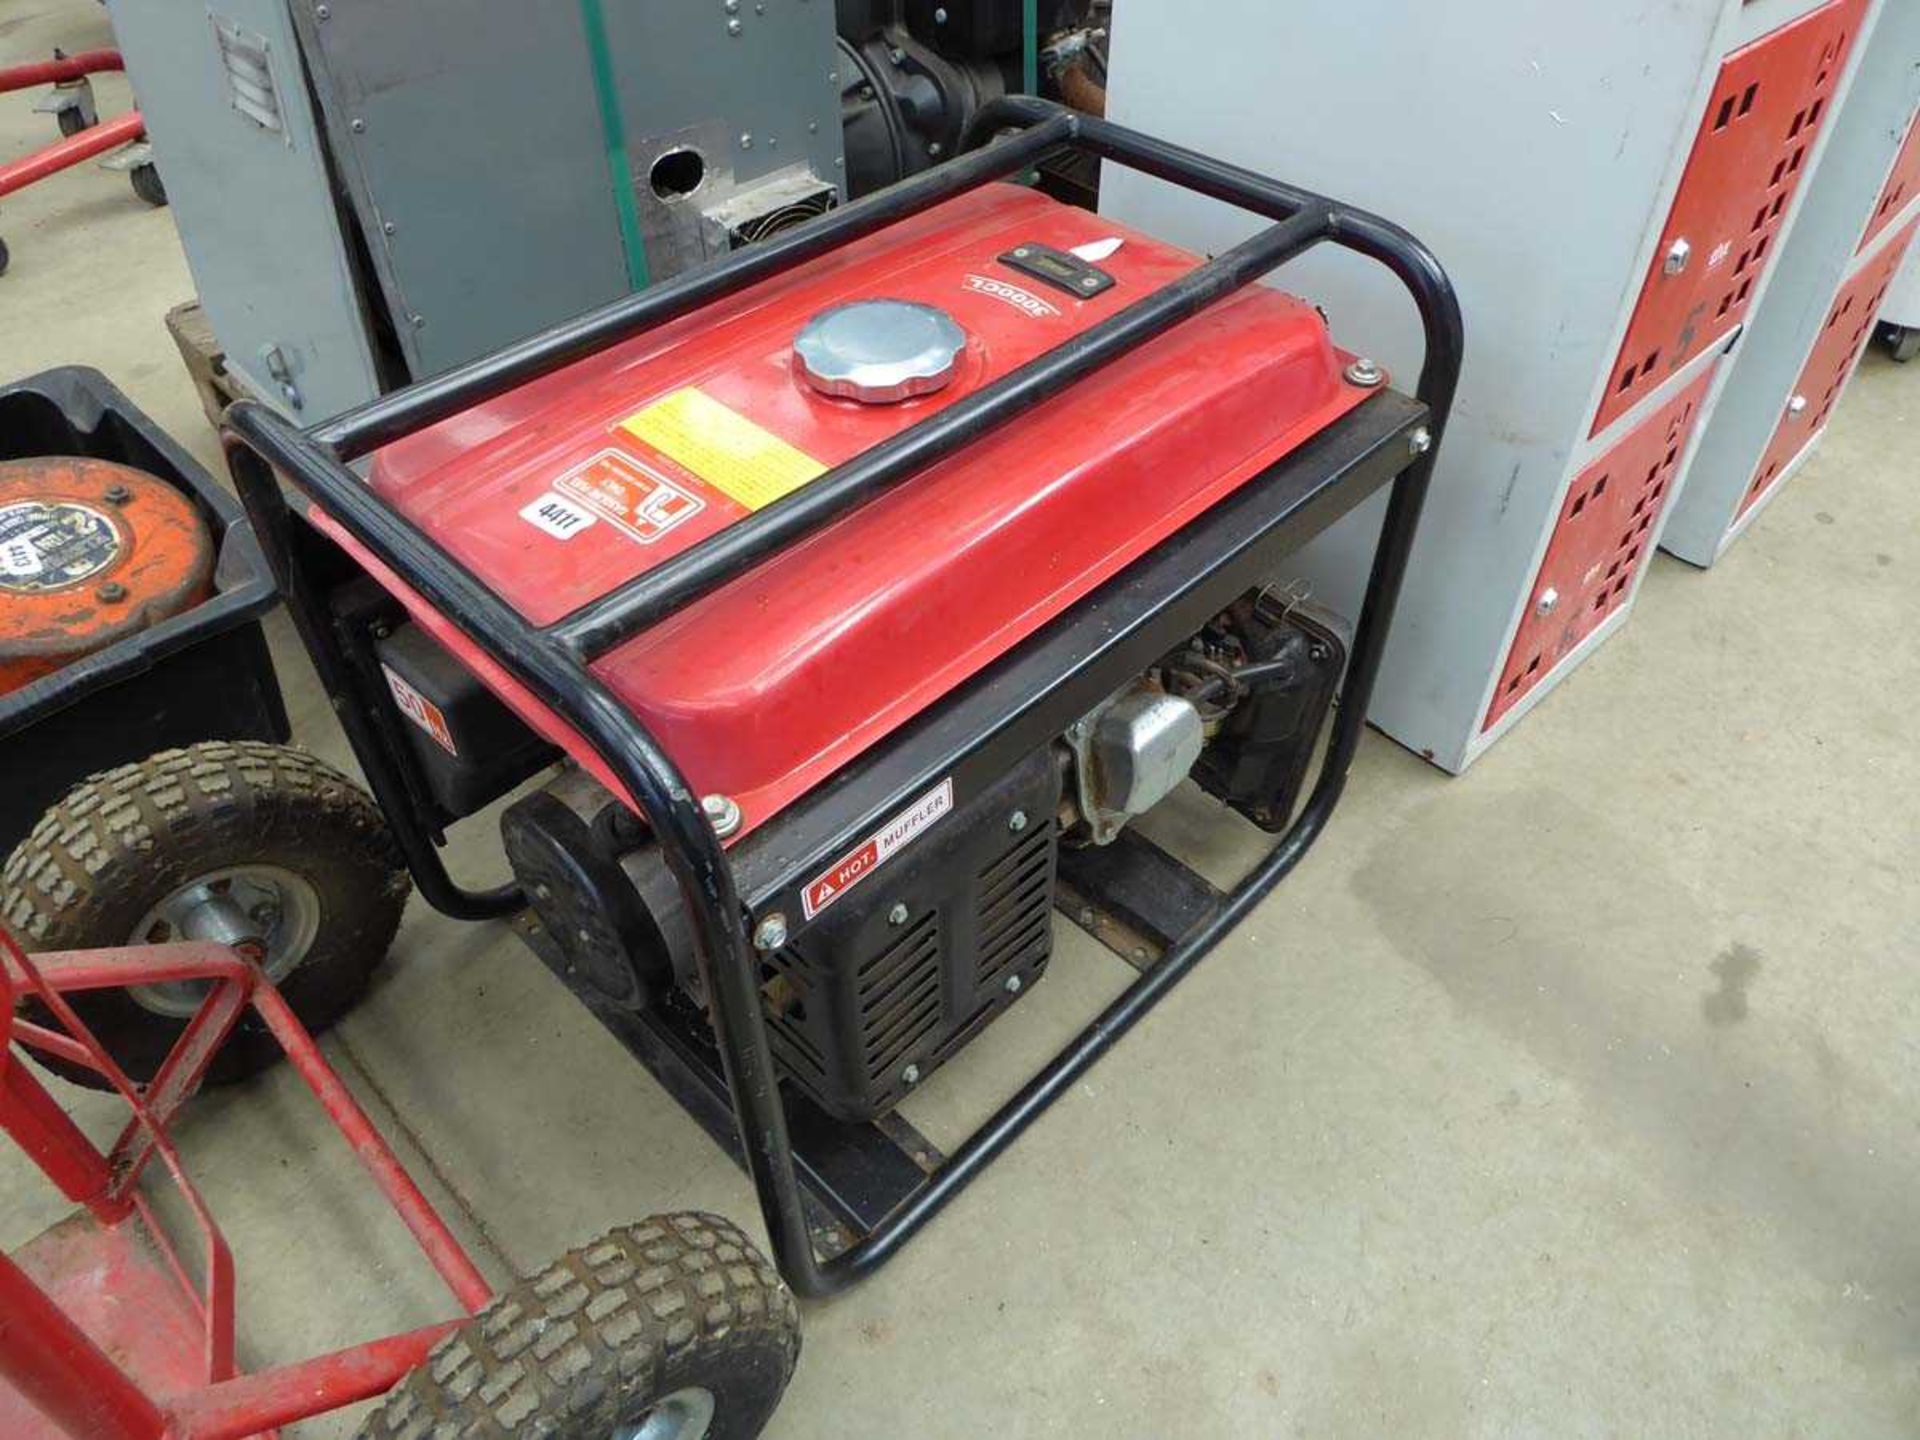 Petrol powered generator